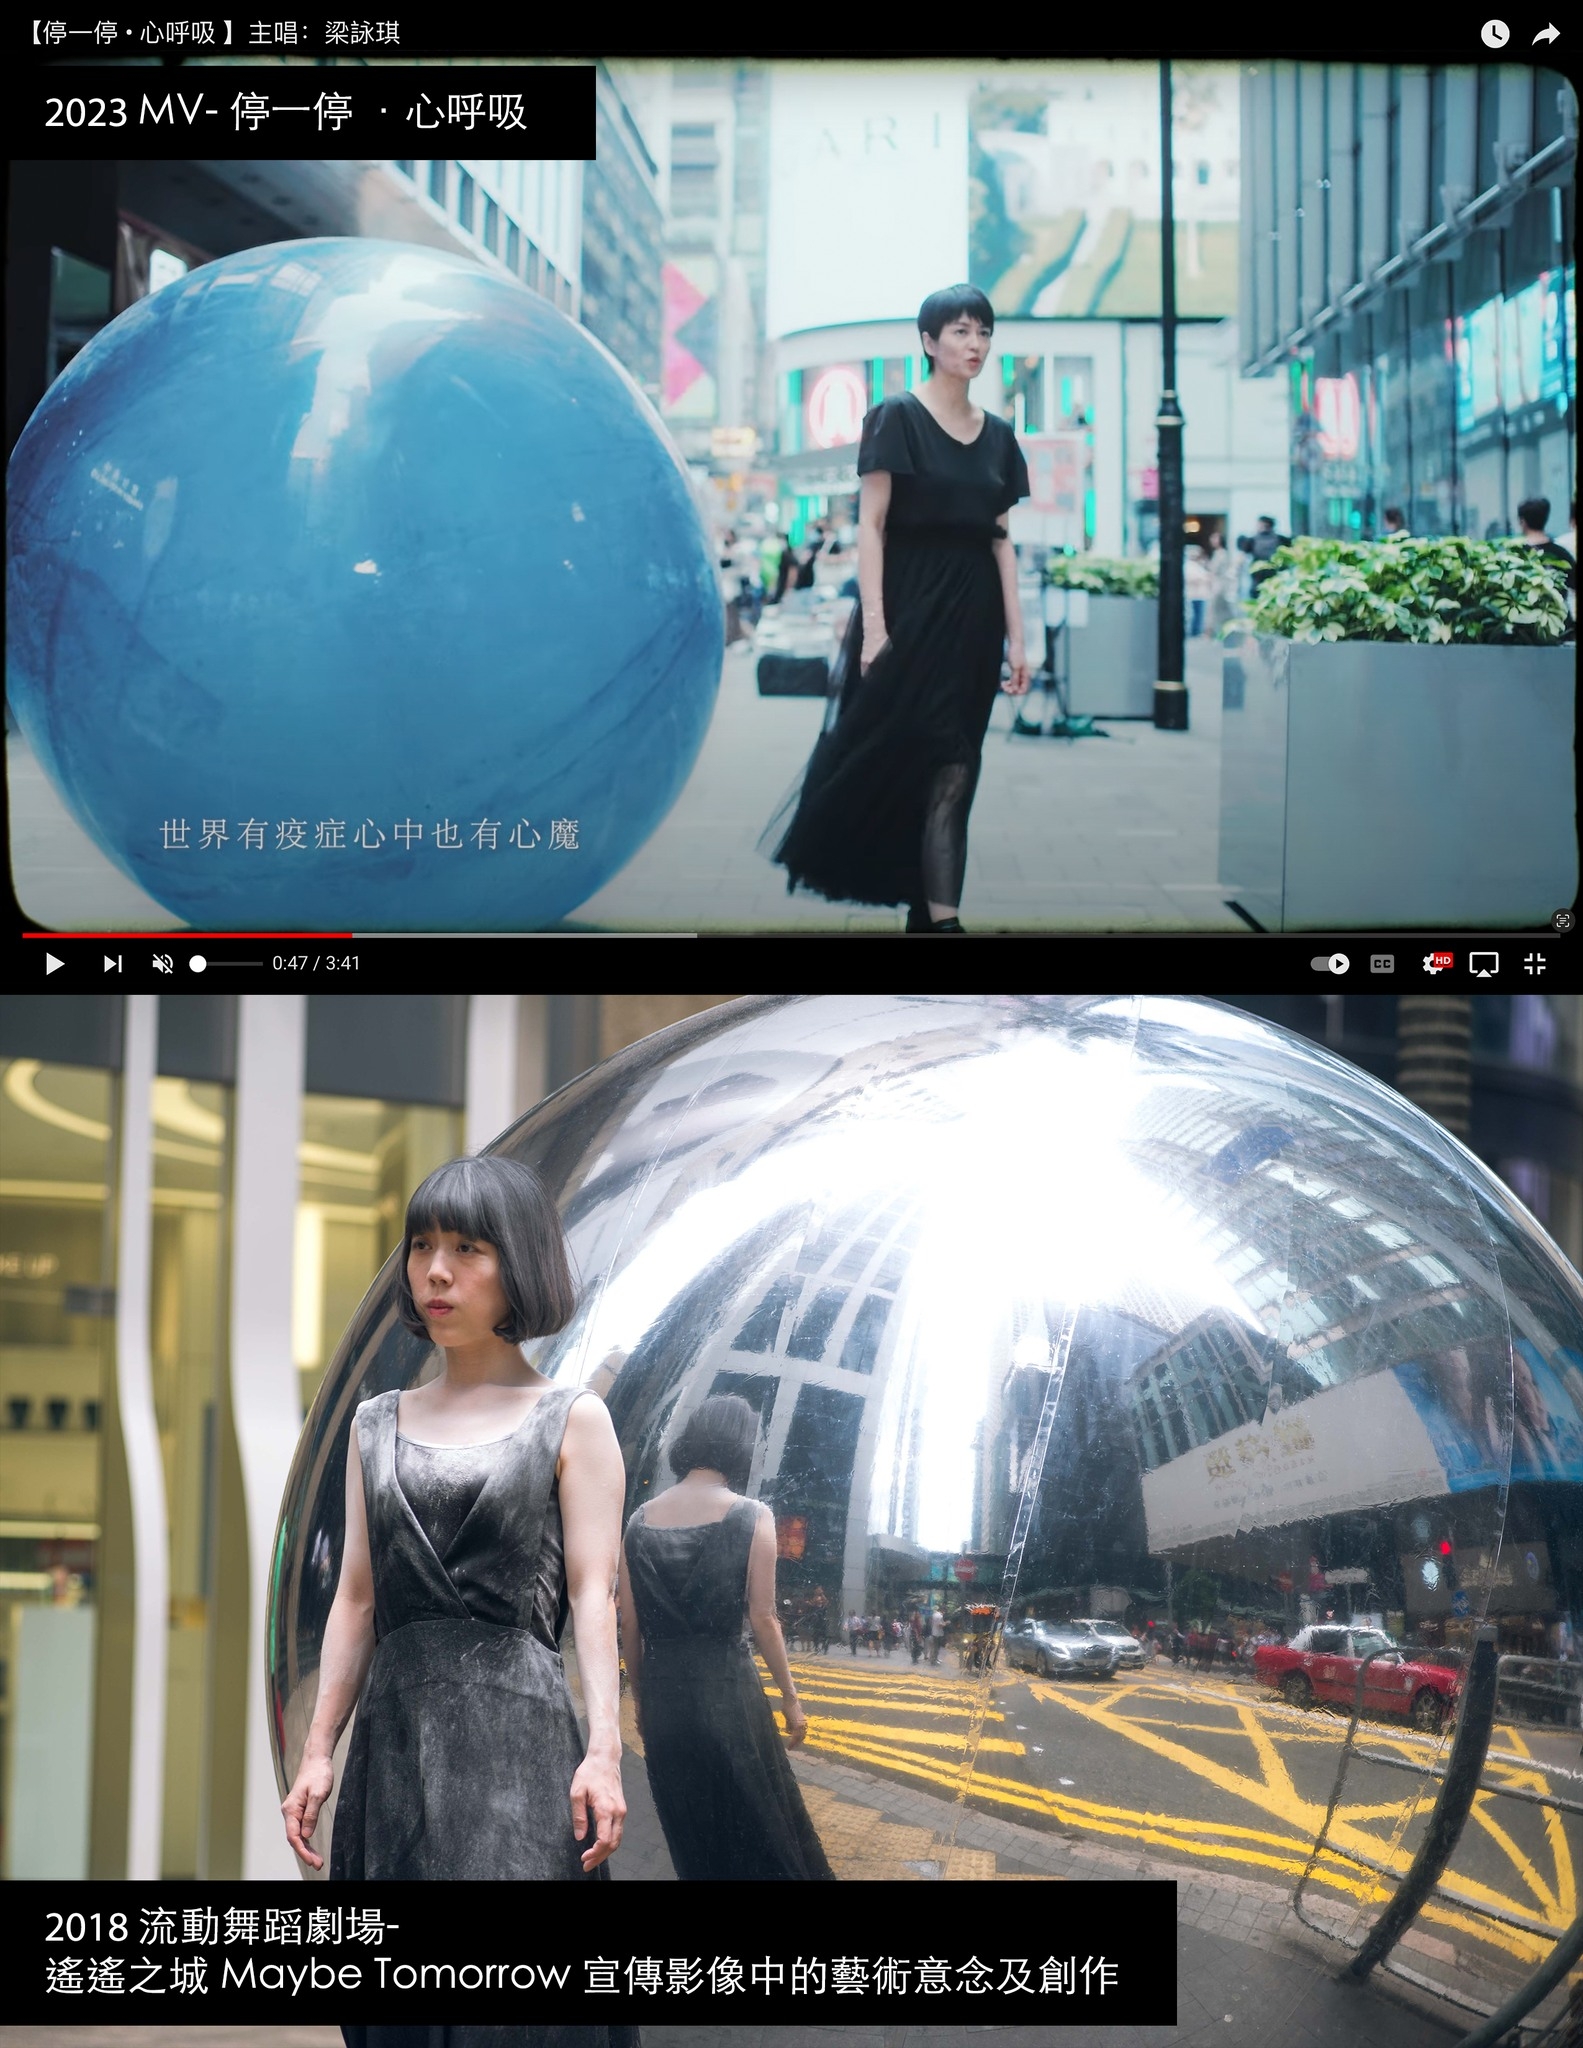 Chloeography Project以多張截圖指出MV同佢哋2018年拍攝嘅《遙遙之城》有多處相似